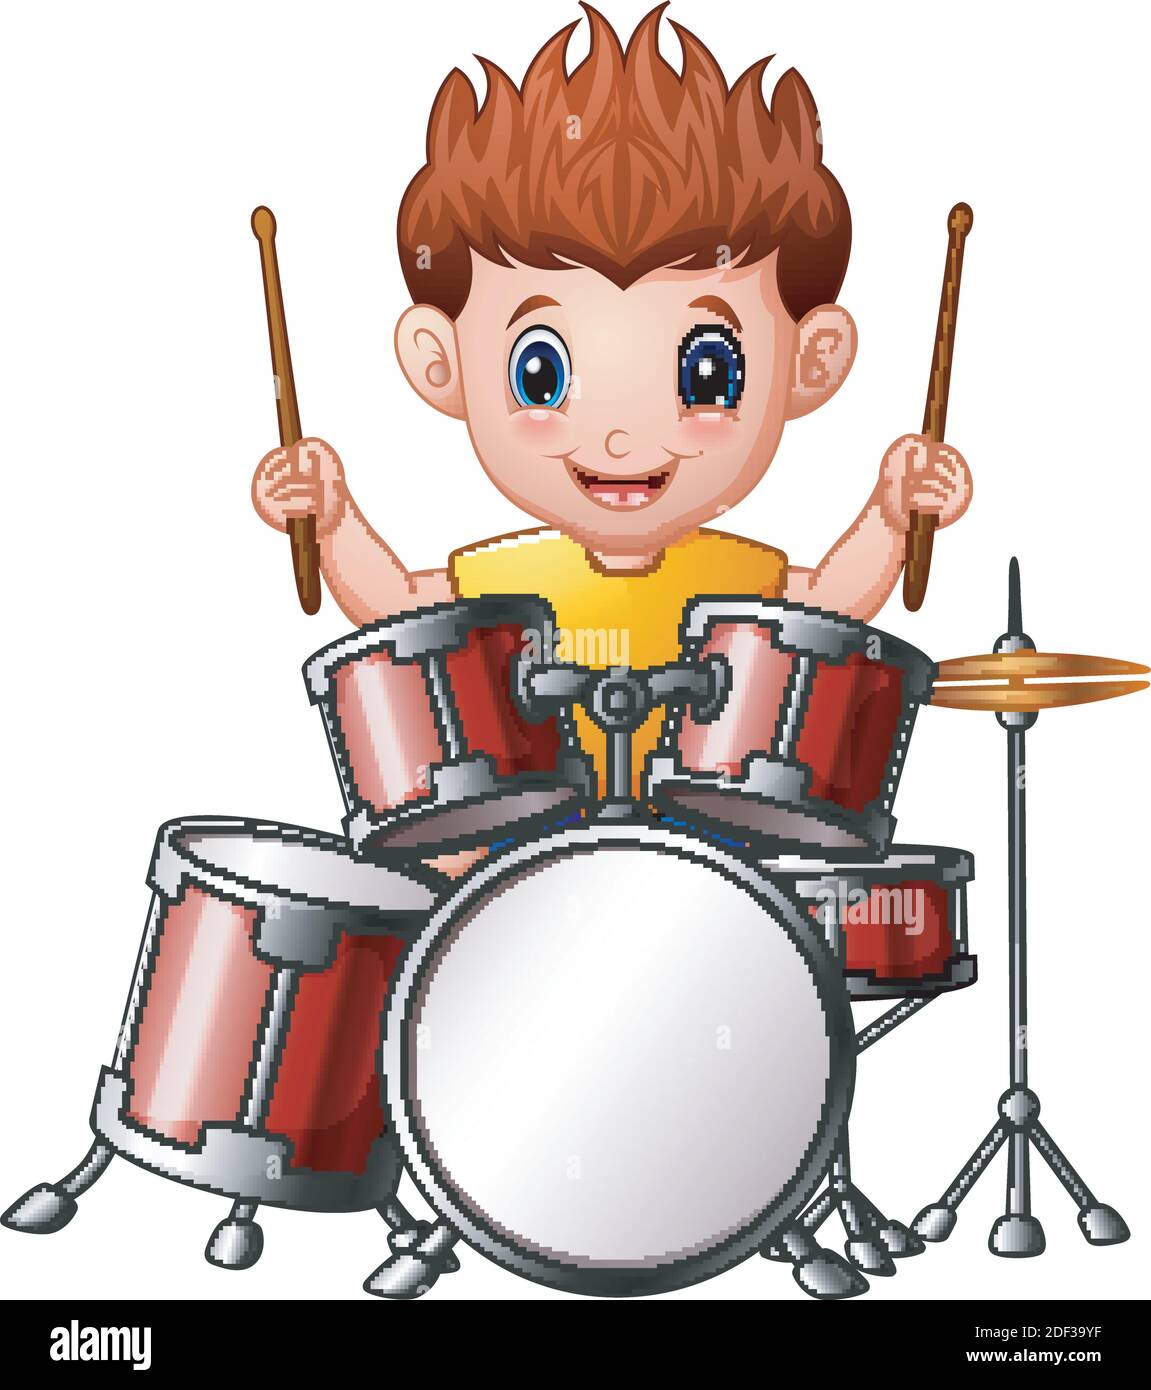 Illustrazione vettoriale del ragazzo di Cartoon che suona una batteria  Immagine e Vettoriale - Alamy